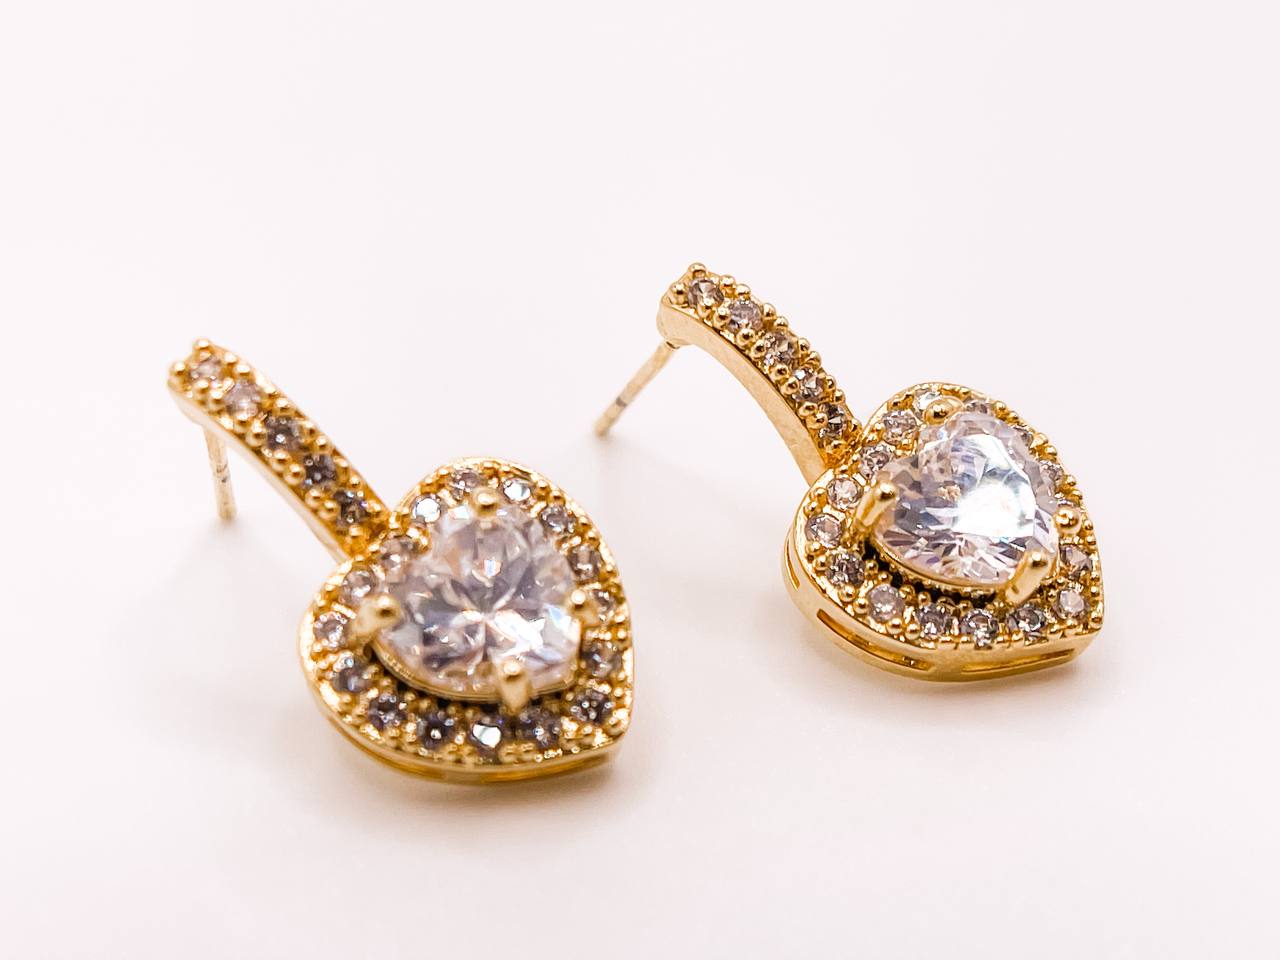 Buy Arzonai Luxury Double Heart Shaped Drop Earrings Large Statement Crystal  Rhinestone Earrings For Women (EARRINGS-7003-SILVER) at Amazon.in